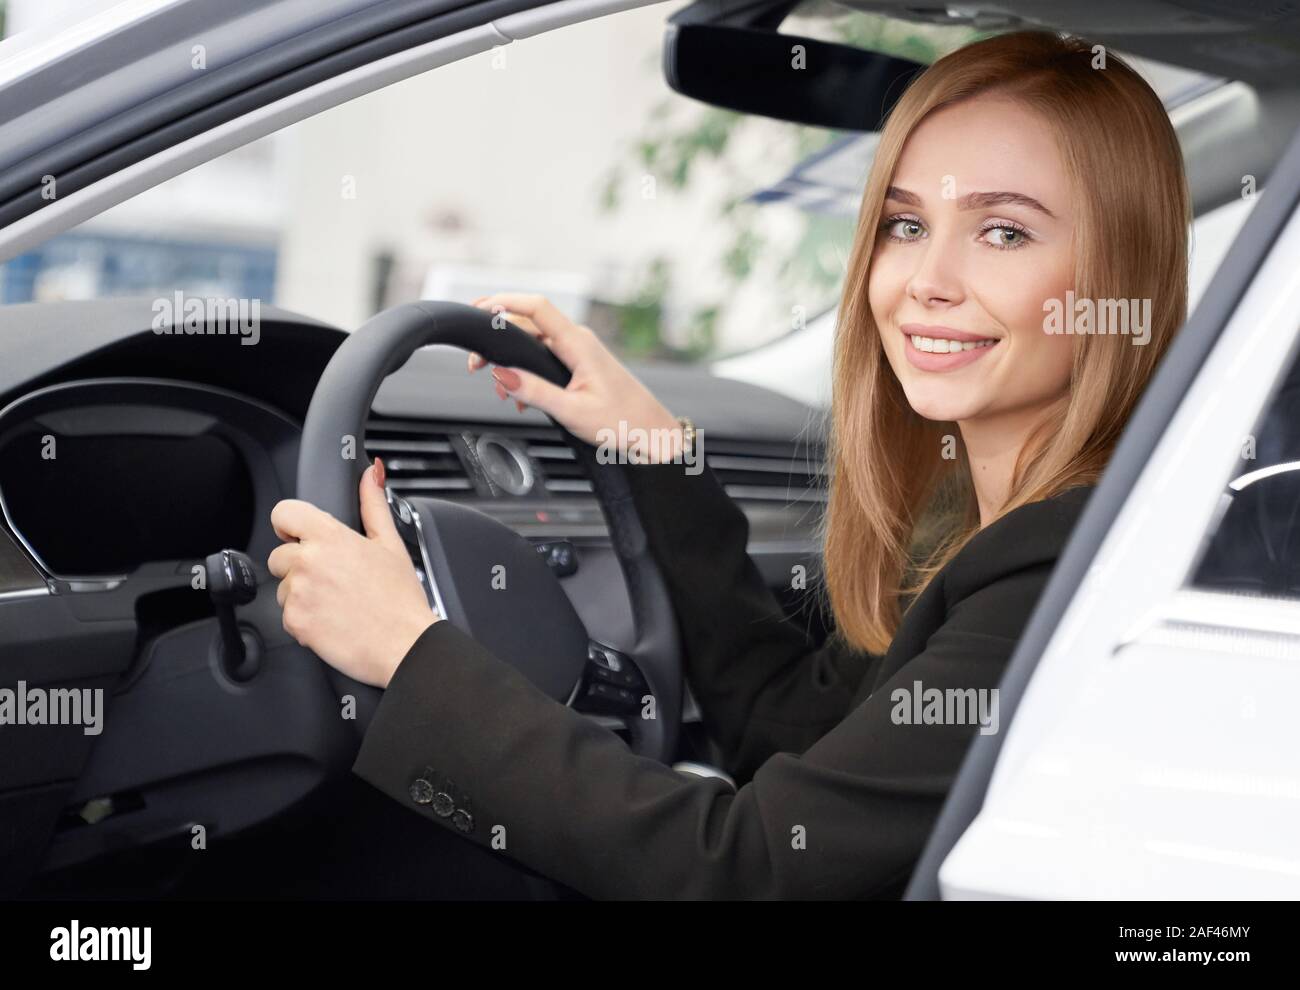 Blick von der offenen Tür von attraktiven weiblichen Kunden der Auto Salon in Weiß Auto sitzen. Lächelnde Blondine Testen neuer Auto, halten die Hände auf Rad und Kamera. Konzept der Auto kaufen. Stockfoto